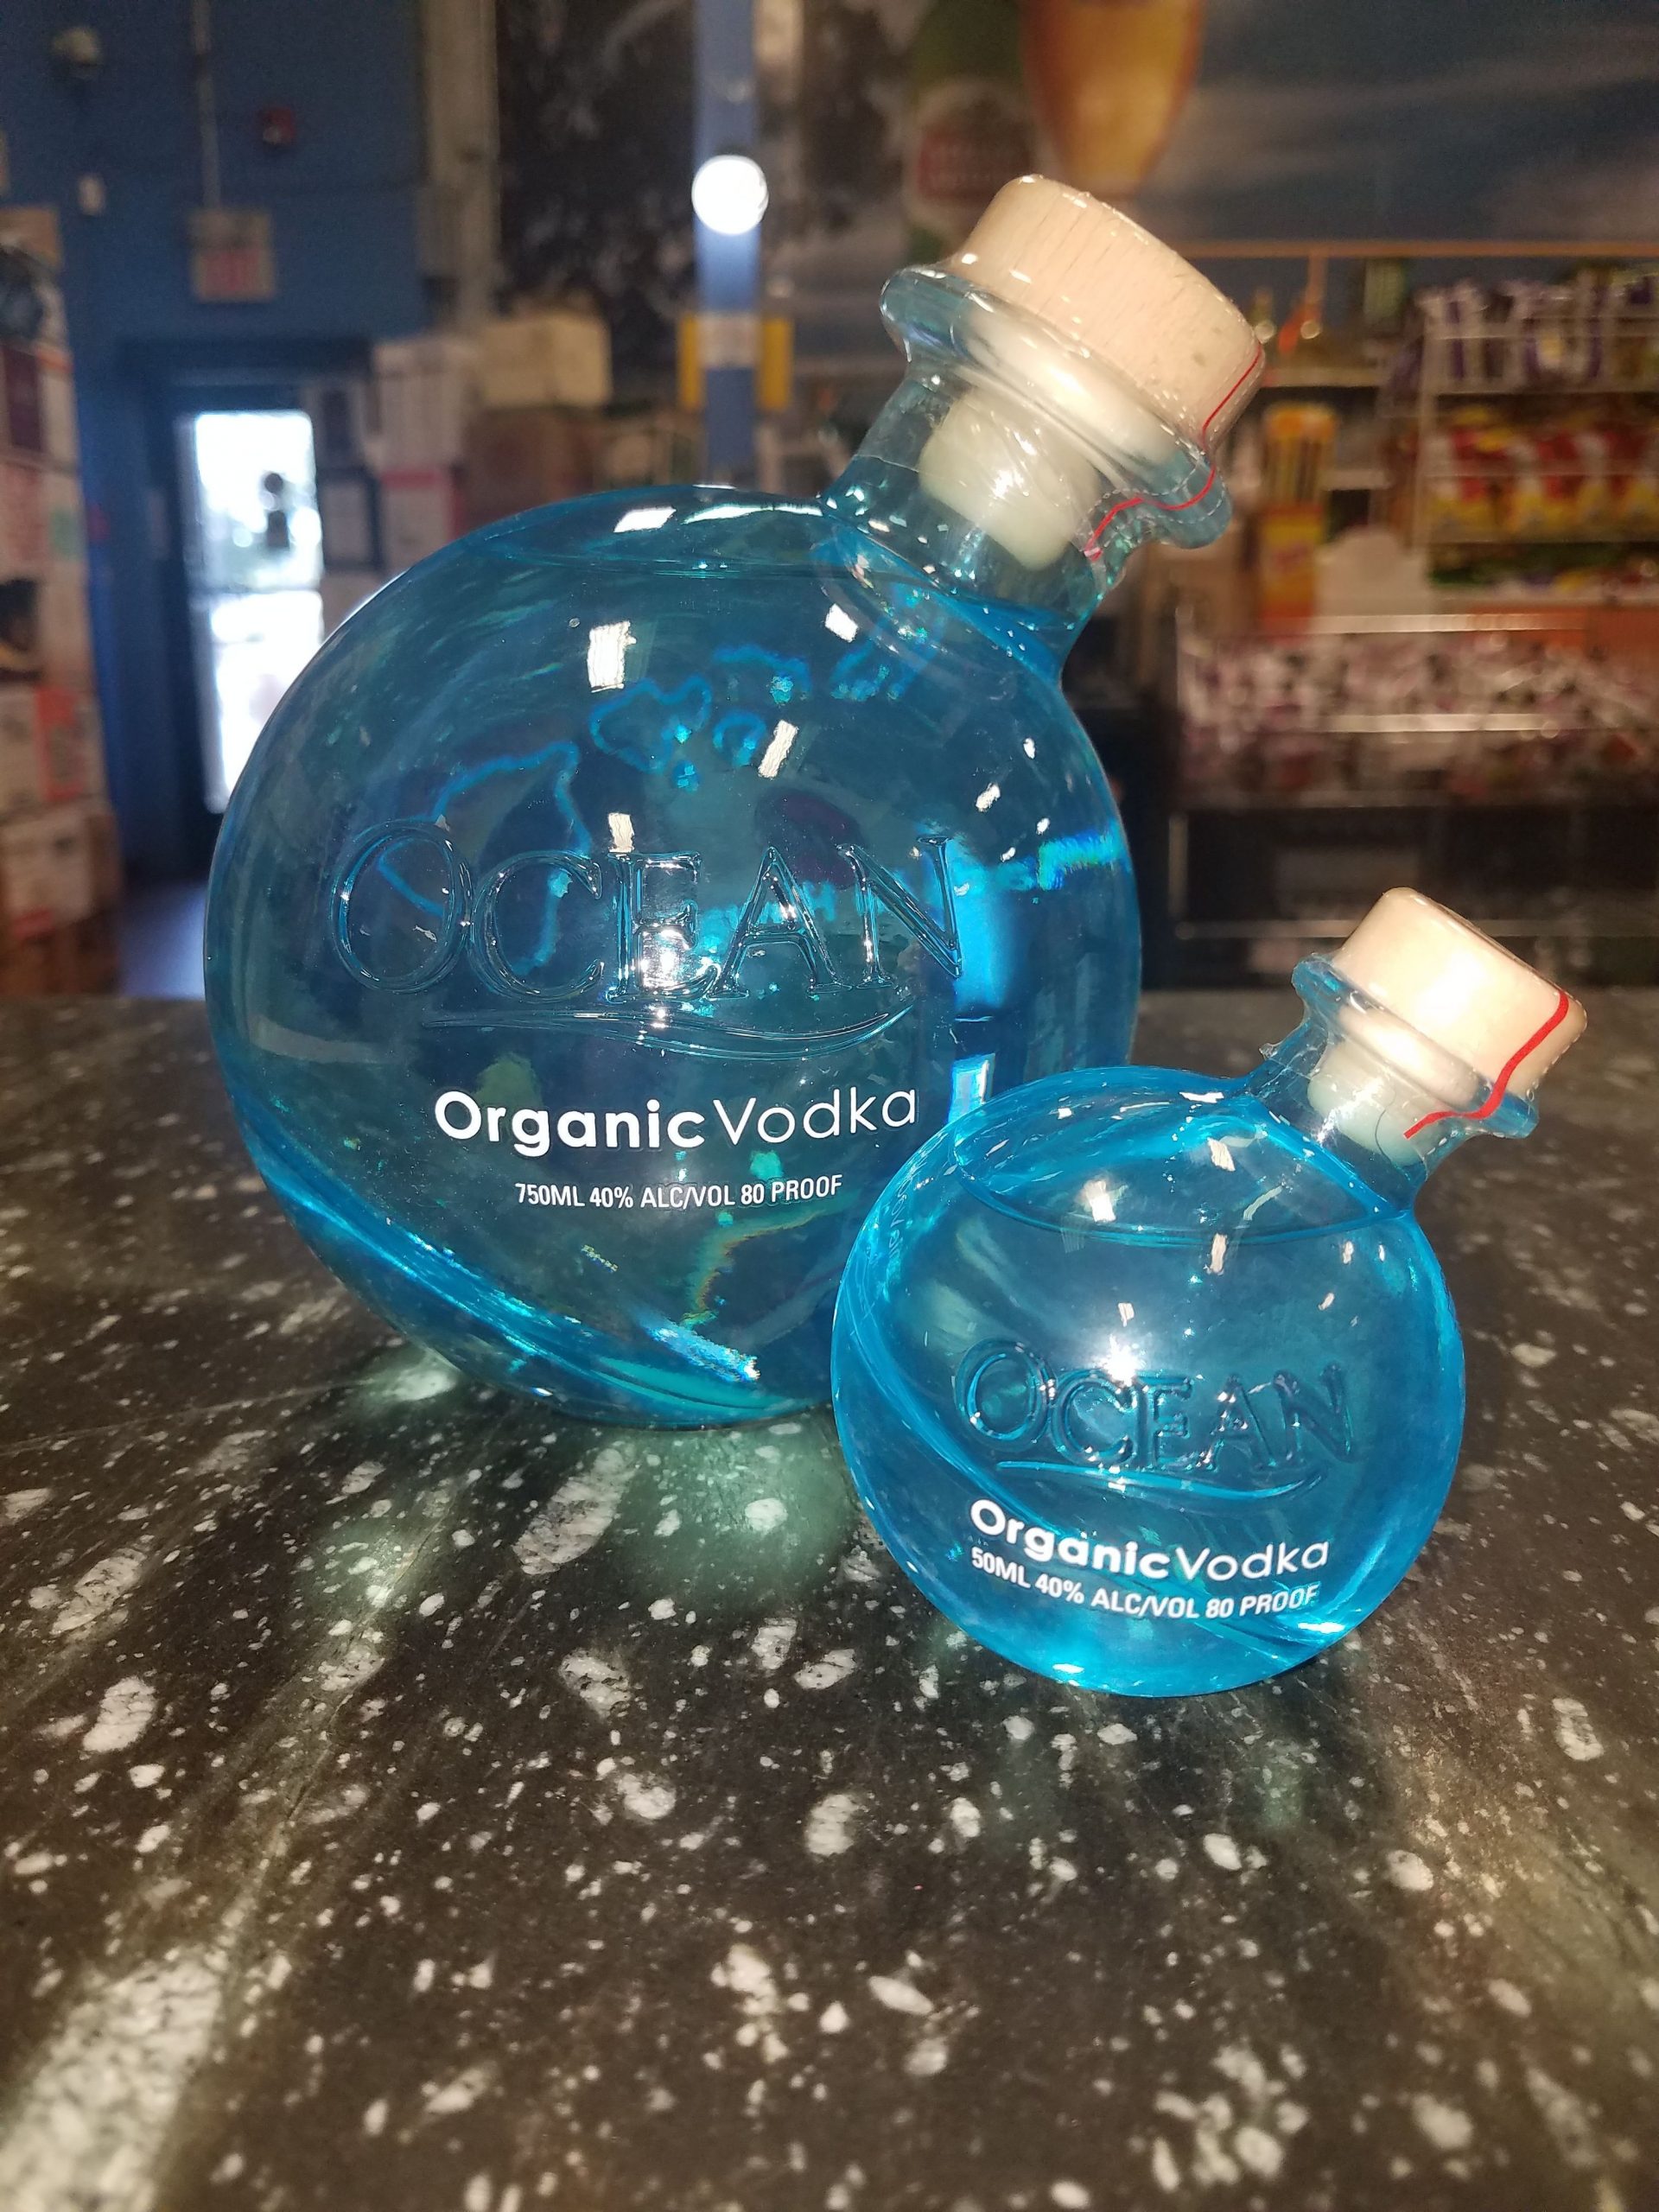 ð??ð?ð Ocean Organic Vodka! Only $29.99 for a 750mL and $4.99 ...